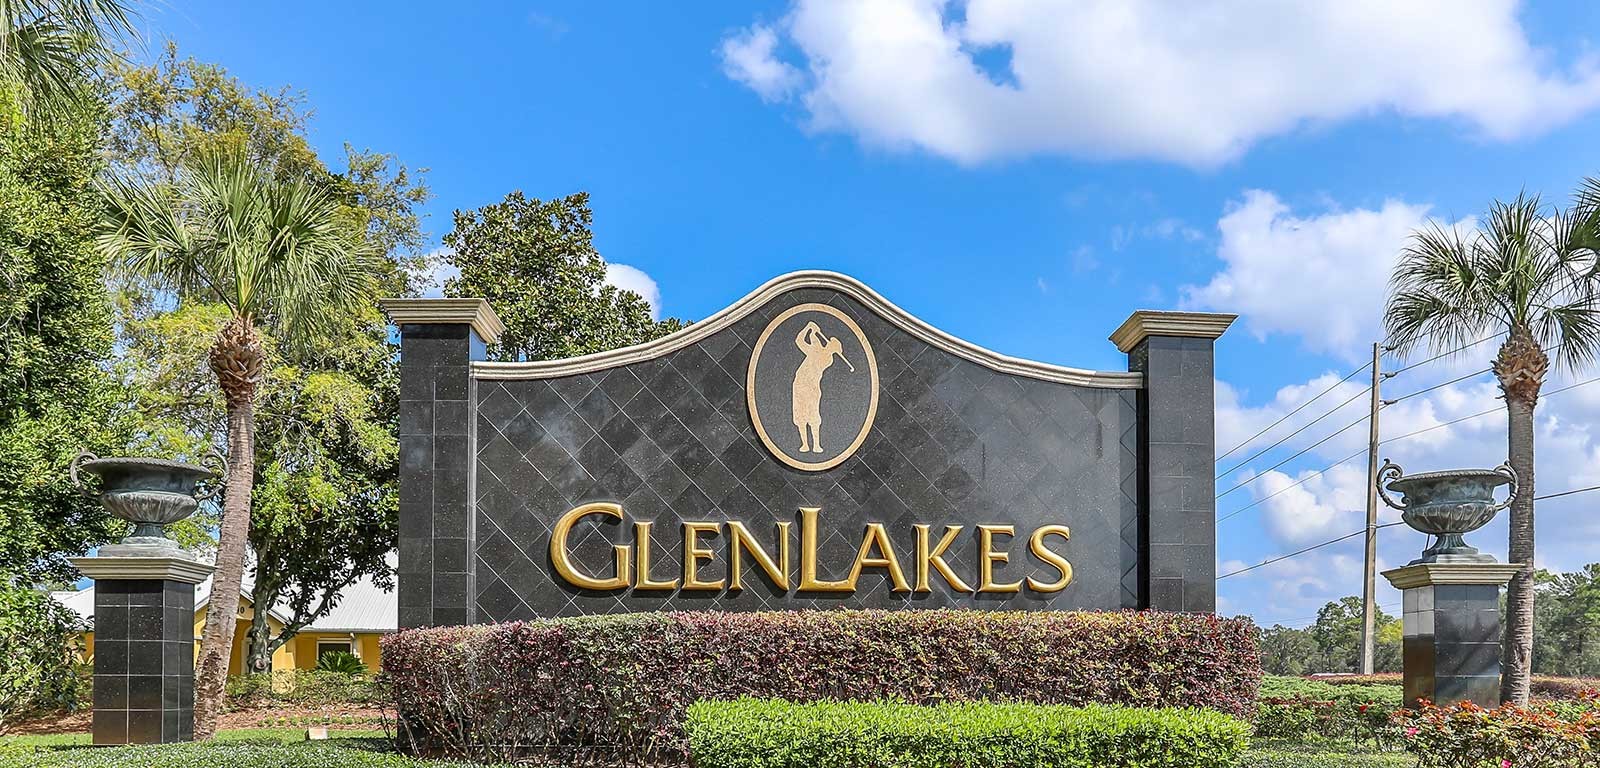 Glen Lakes neighborhood welcome sign